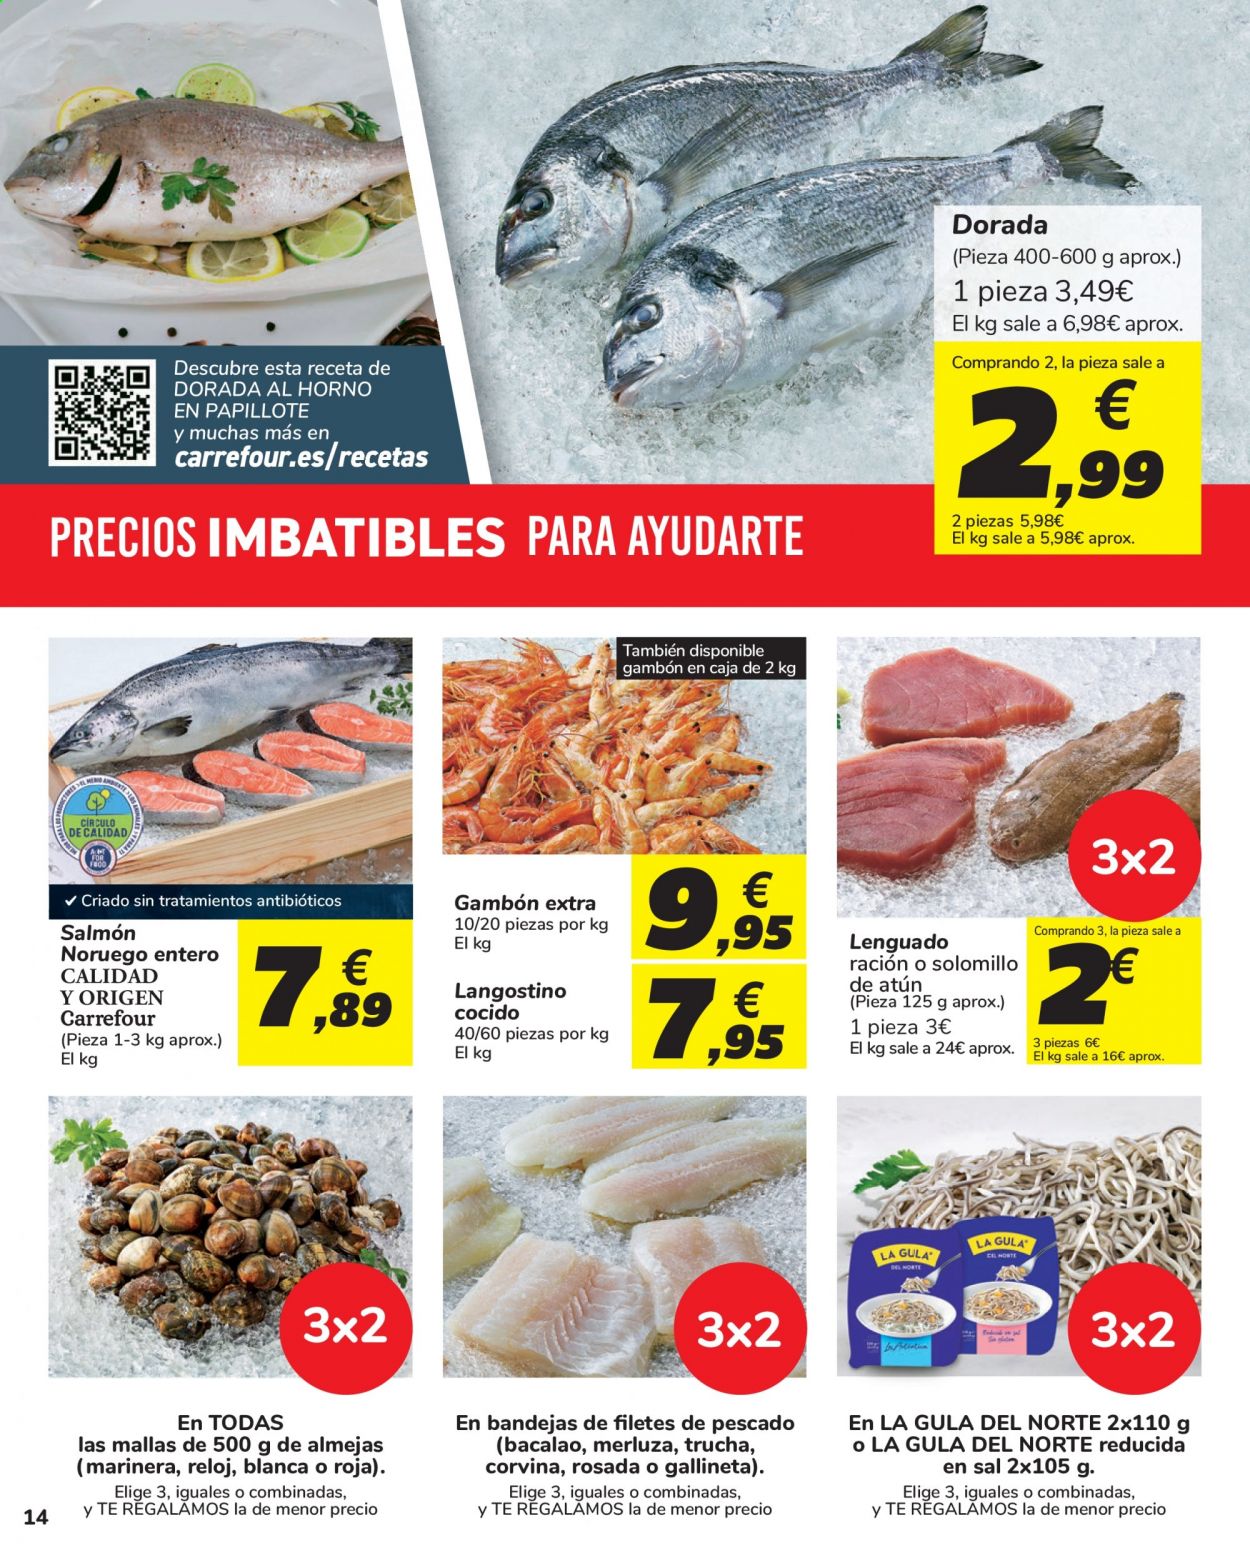 thumbnail - Folleto actual Carrefour - 27/04/21 - 10/05/21 - Ventas - solomillo, merluza, dorada pescado, gambón, langostino, salmón, solomillo de atún, sal, La Gula del Norte. Página 14.